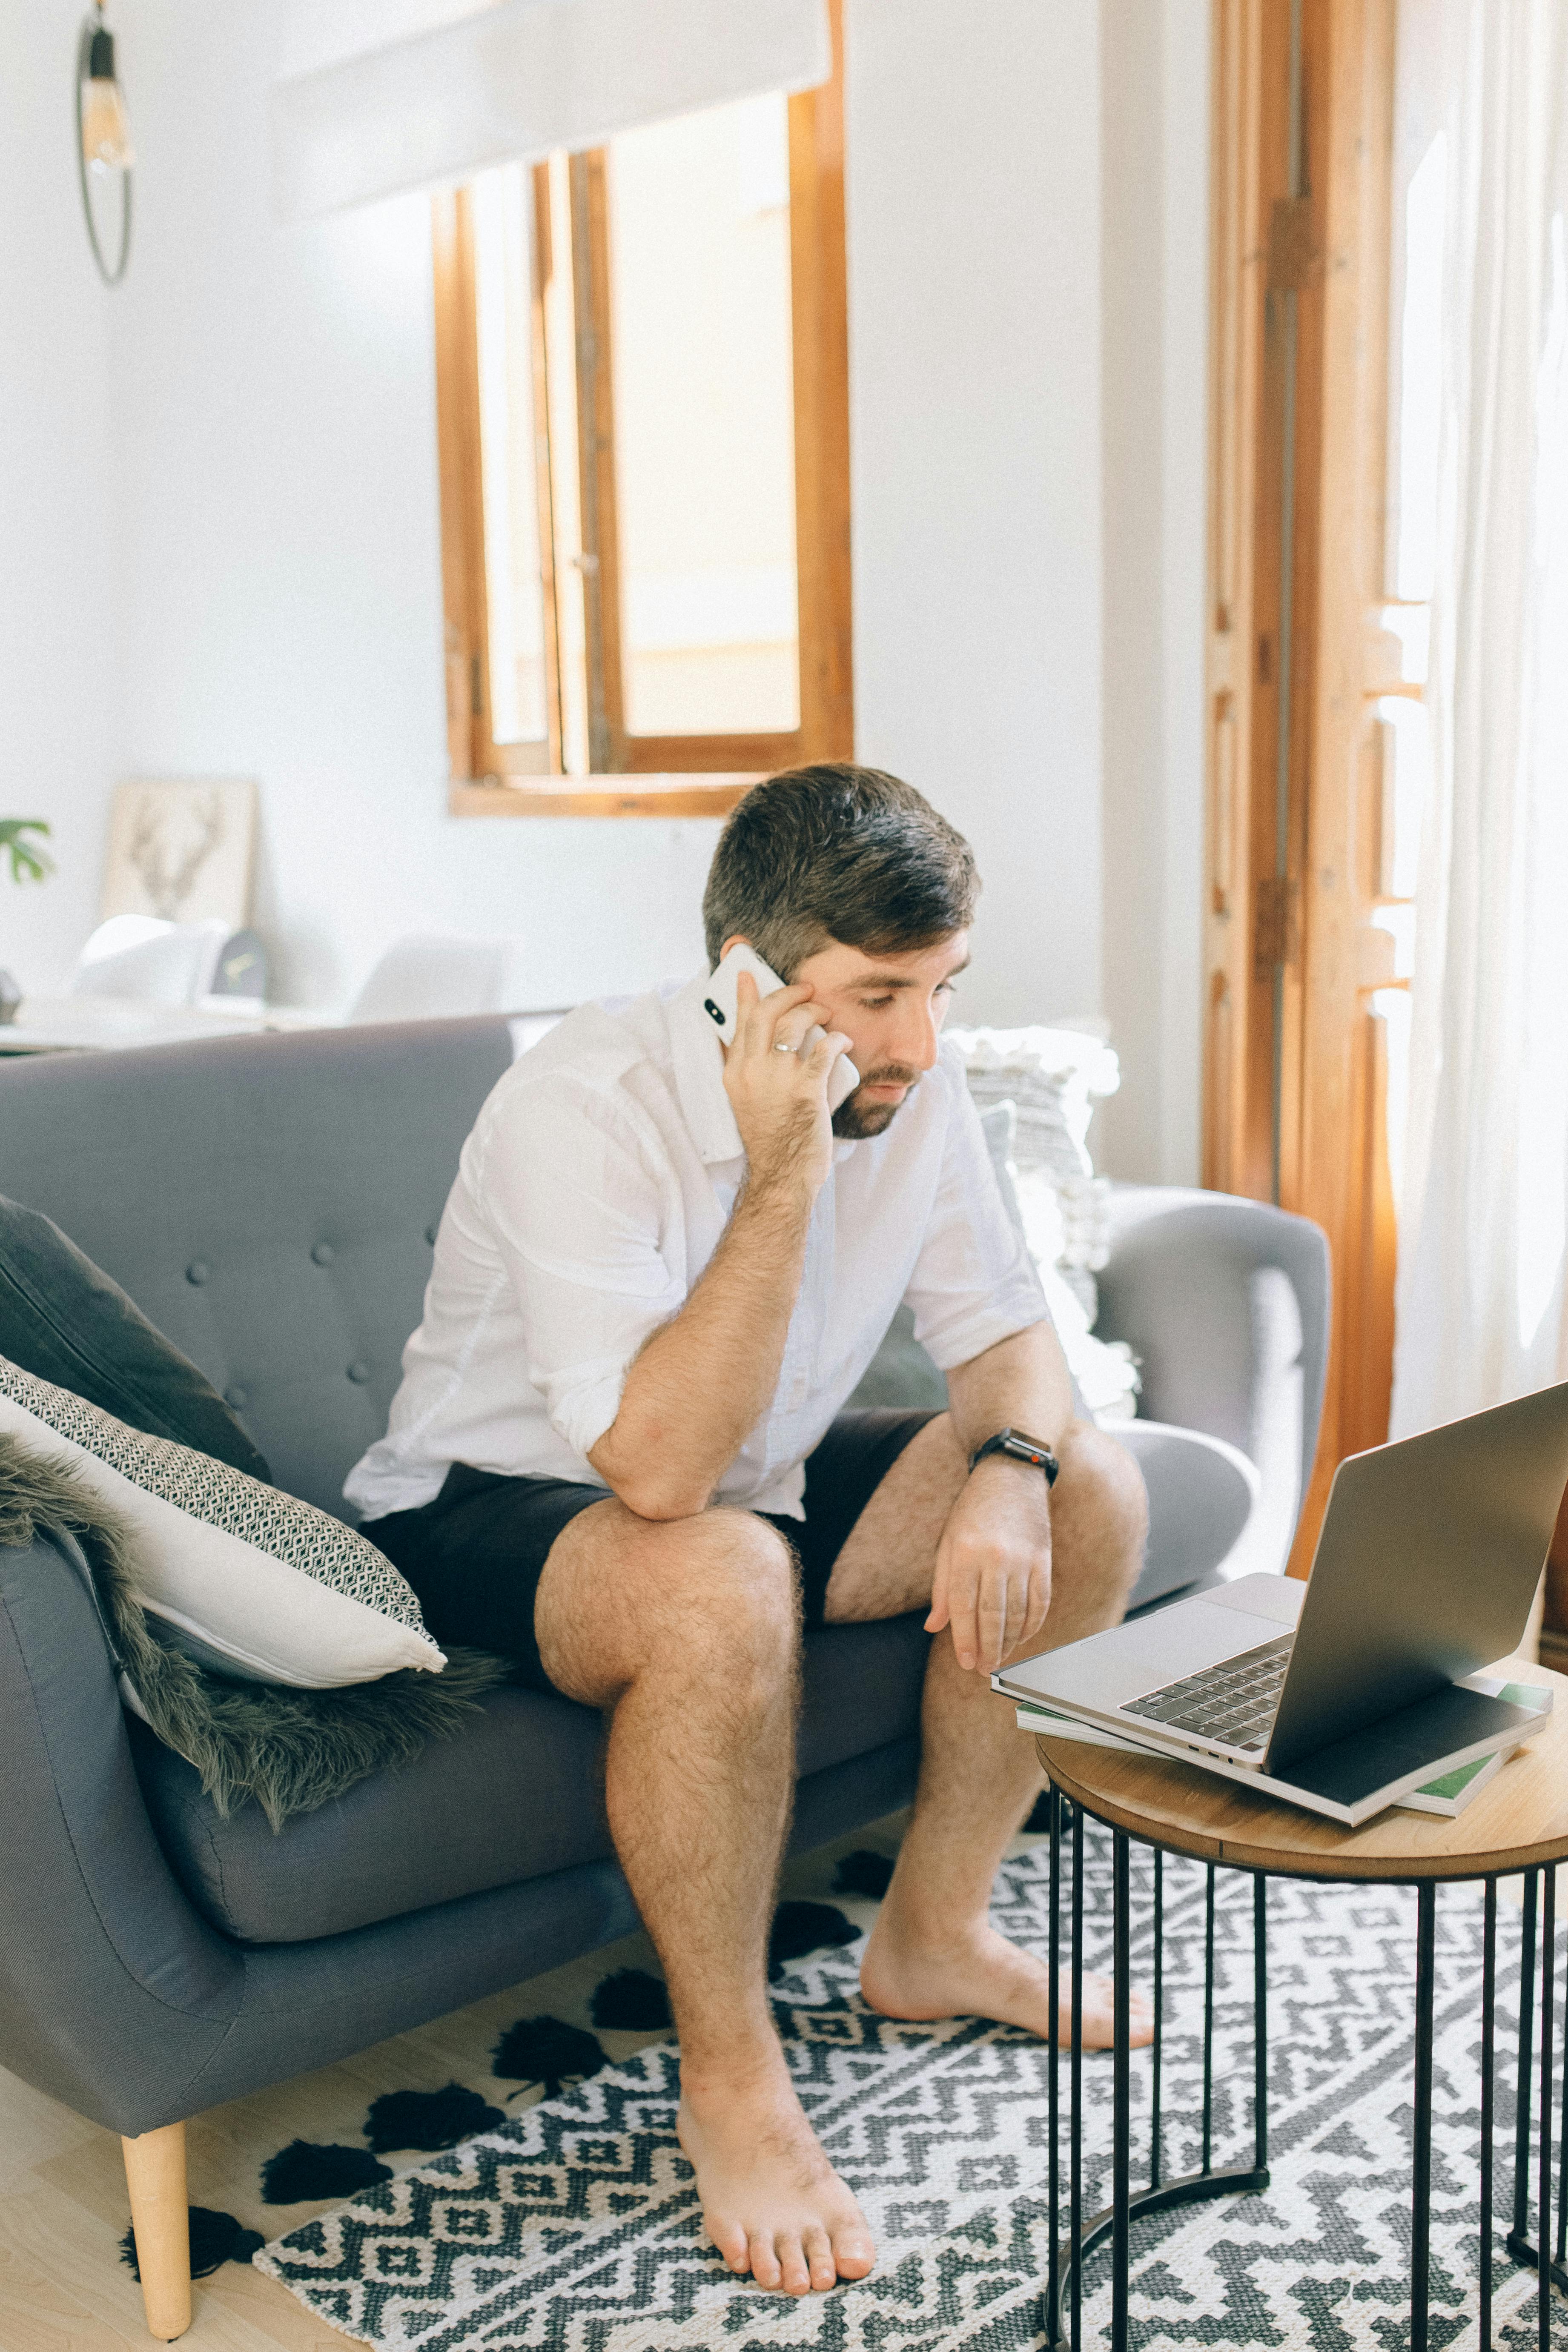 Ein Mann führt ein ernstes Gespräch am Telefon | Quelle: Pexels